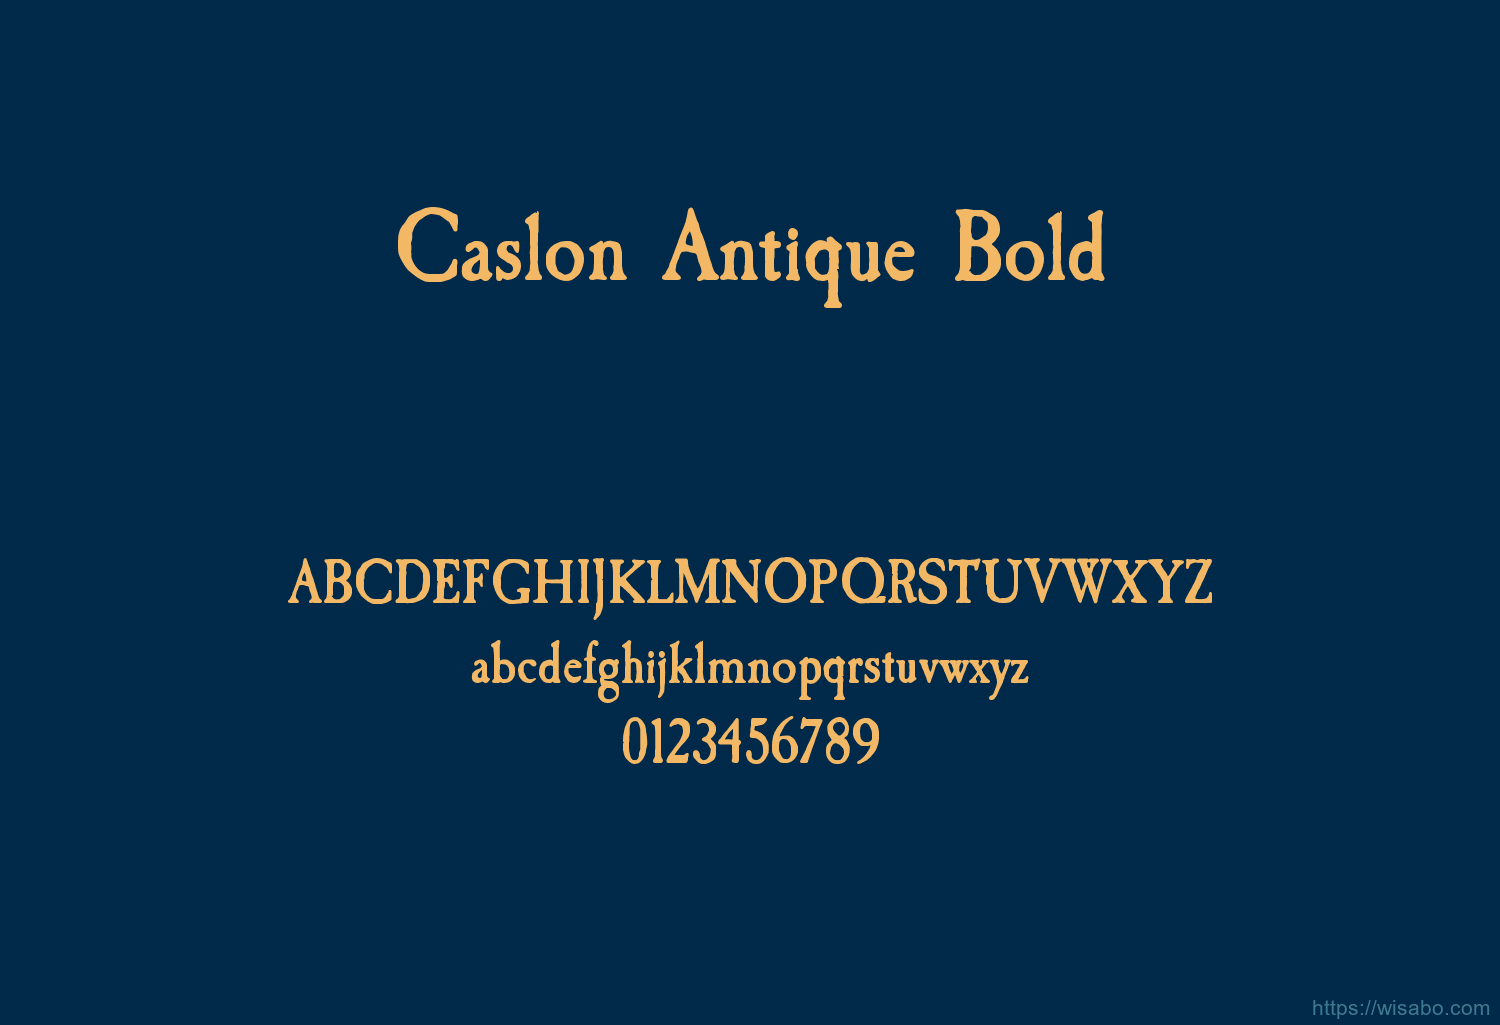 Caslon Antique Bold